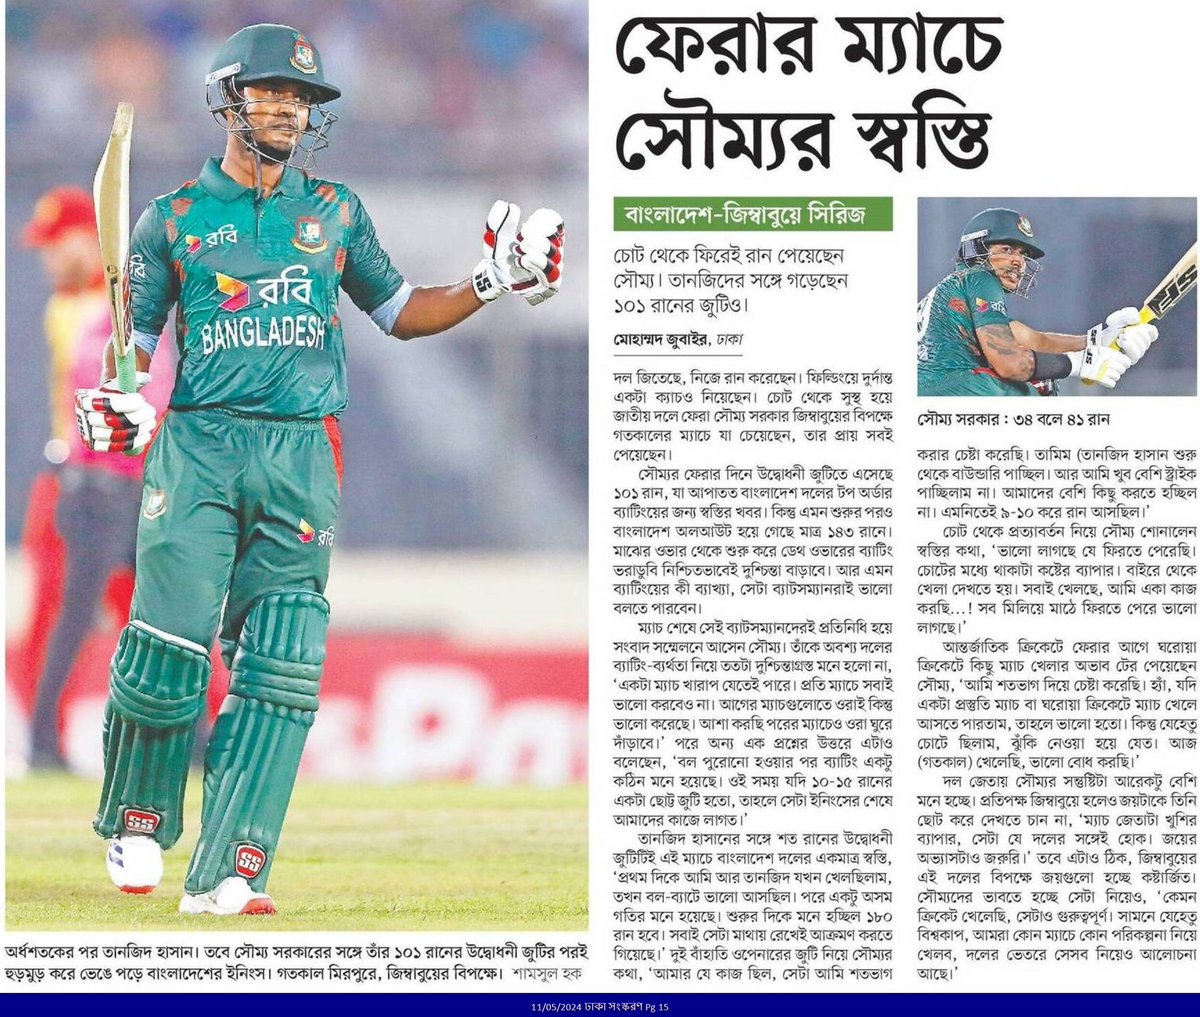 ফেরার ম্যাচে সৌম্যর স্বস্তি... #SportsNews #Bangladesh #Newspaper #BangladeshCricket #BDCricket @BCBtigers